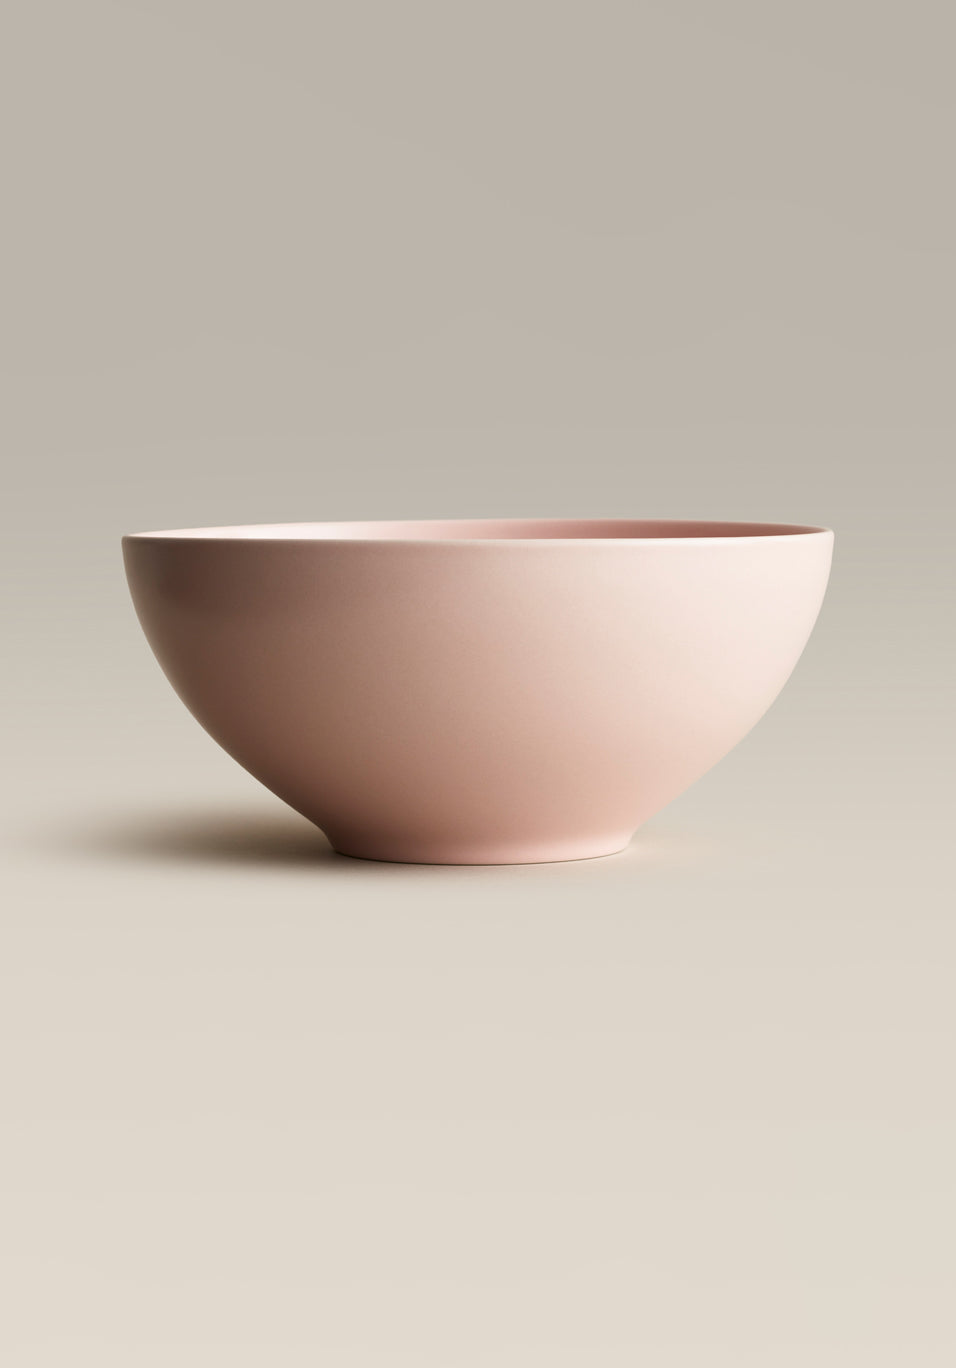 Ceramic Serving Bowls, Serving Bowls